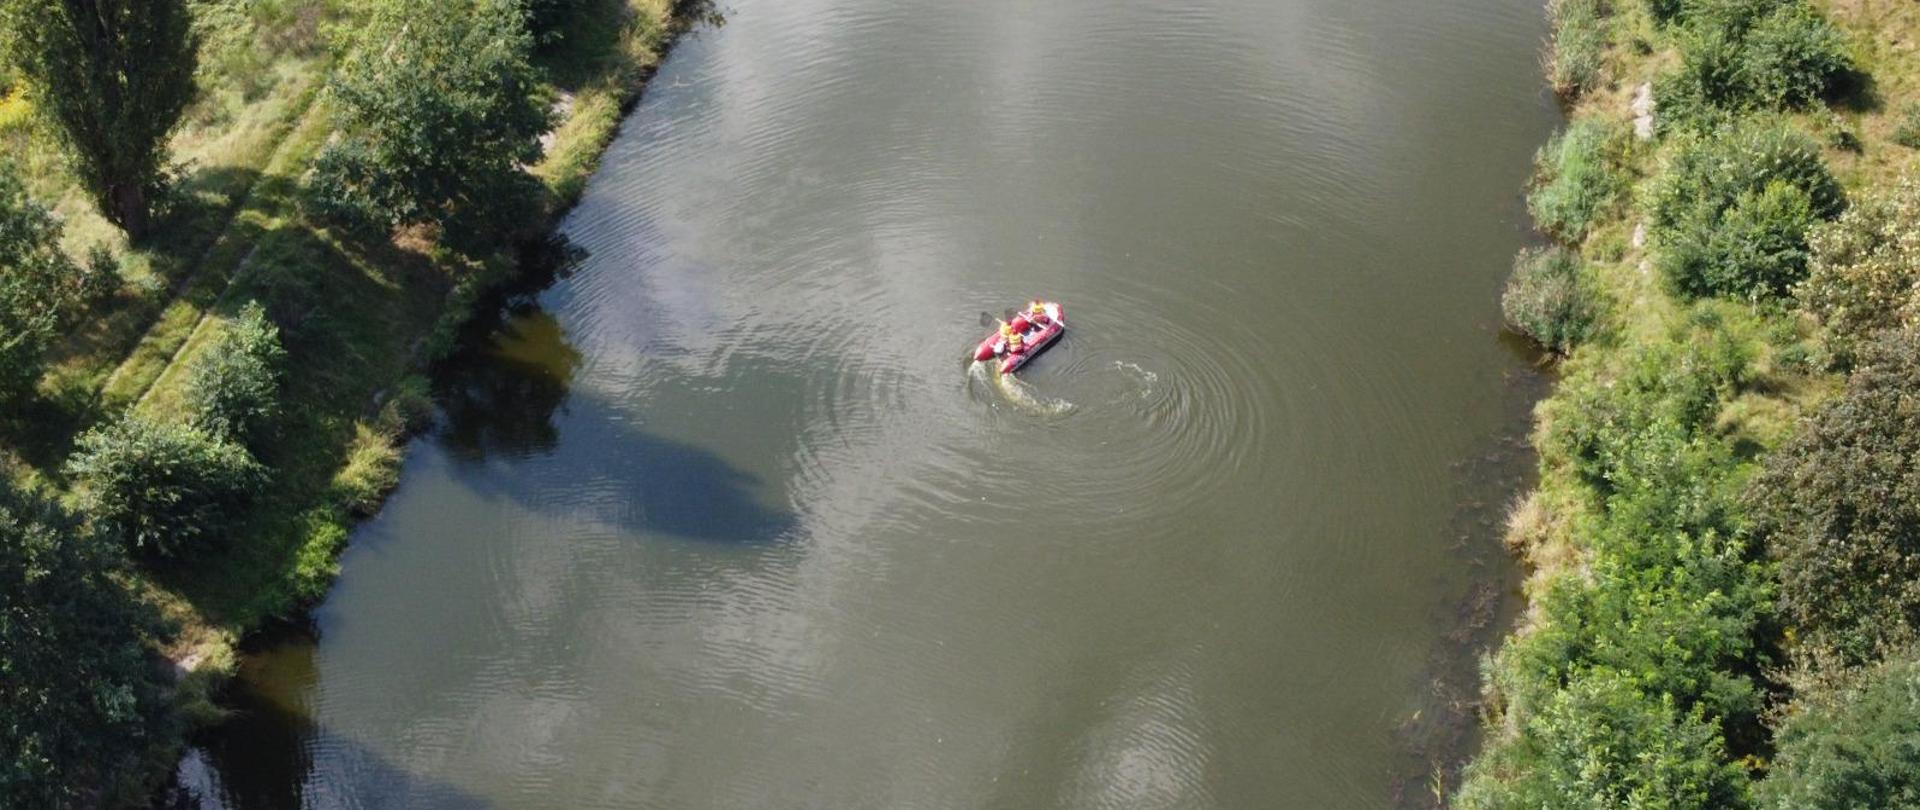 Zdjęcie przedstawia fragment rzeki. Na rzece widać płynący ponton wodny, w którym są trzy osoby